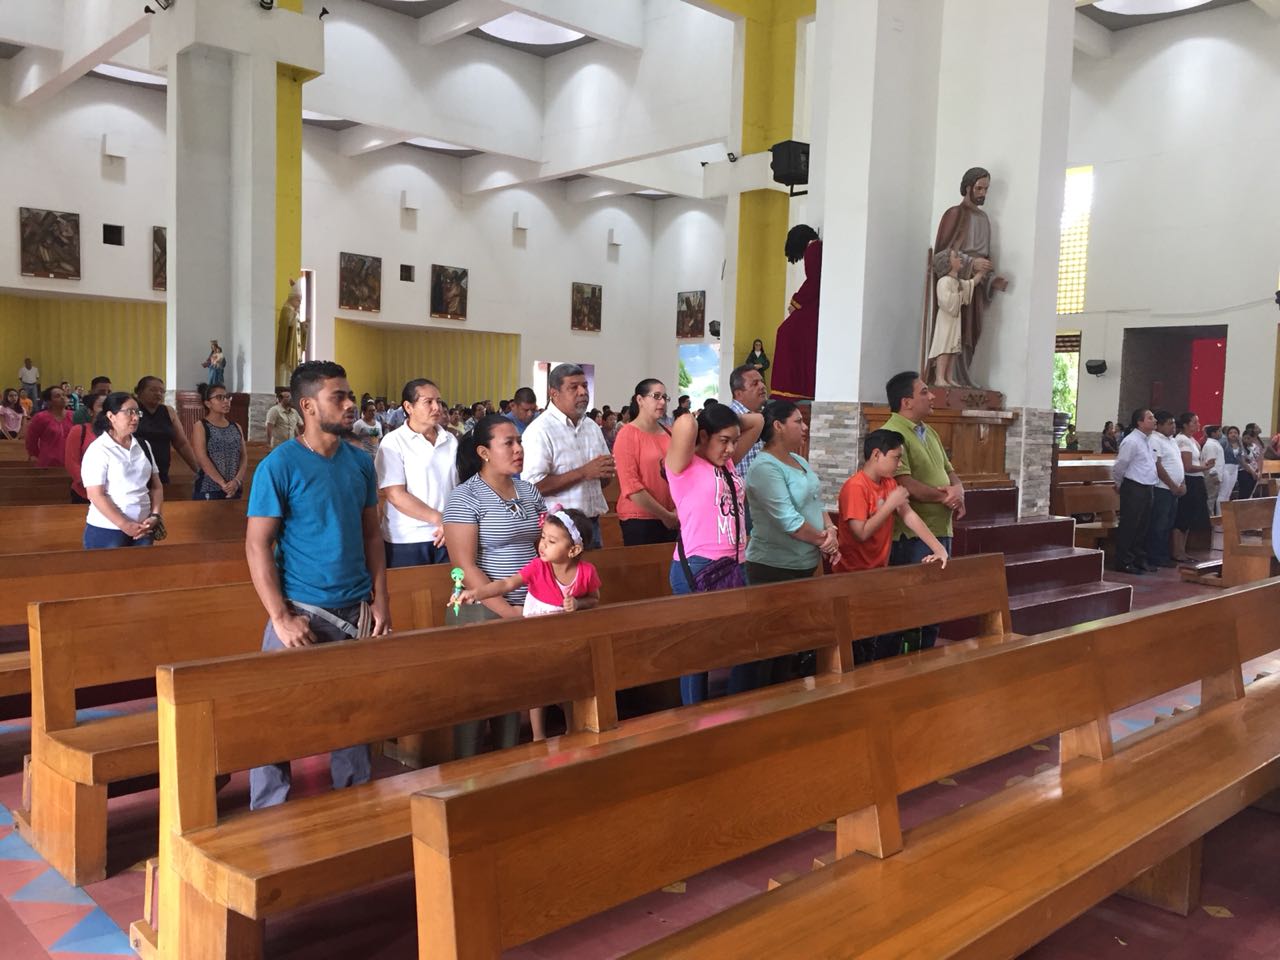 Los obispos de la Conferencia Episcopal de Nicaragua esperan una pronta respuesta del mandatario nicaragüense para evitar más violencia en el país. Foto: Margin Pozo